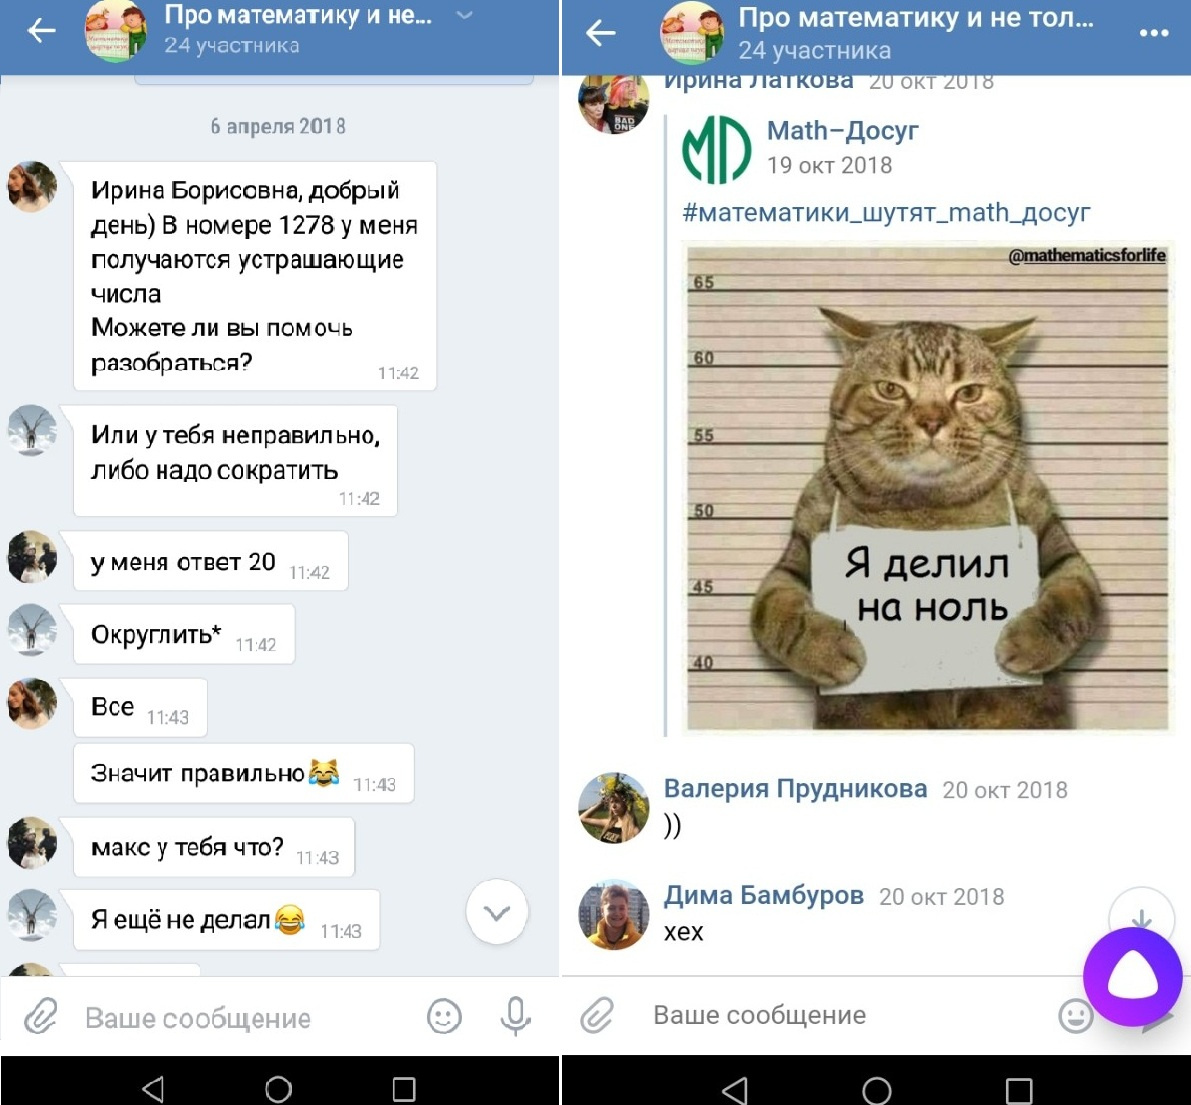 В переписке во «ВКонтакте» дети могут попросить помощи преподавателя или поделиться смешной картинкой